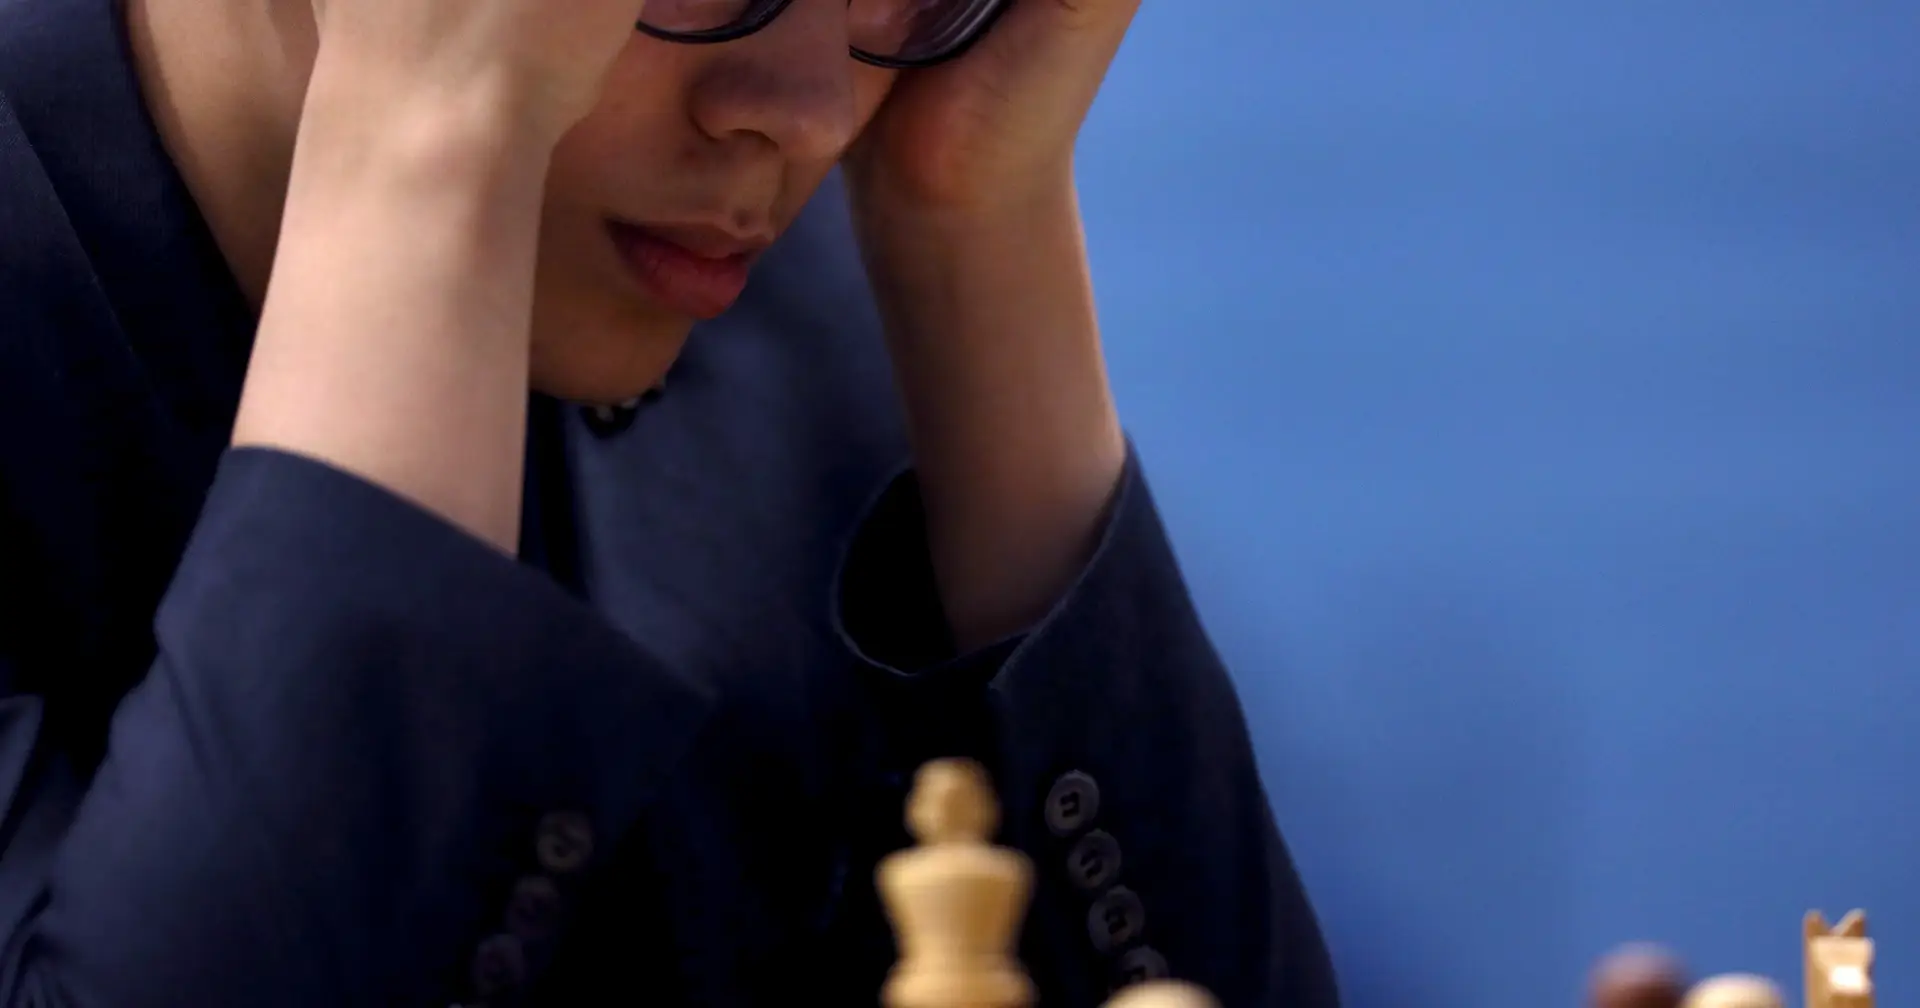 Após 12 empates, campeão mundial de xadrez pode ser definido